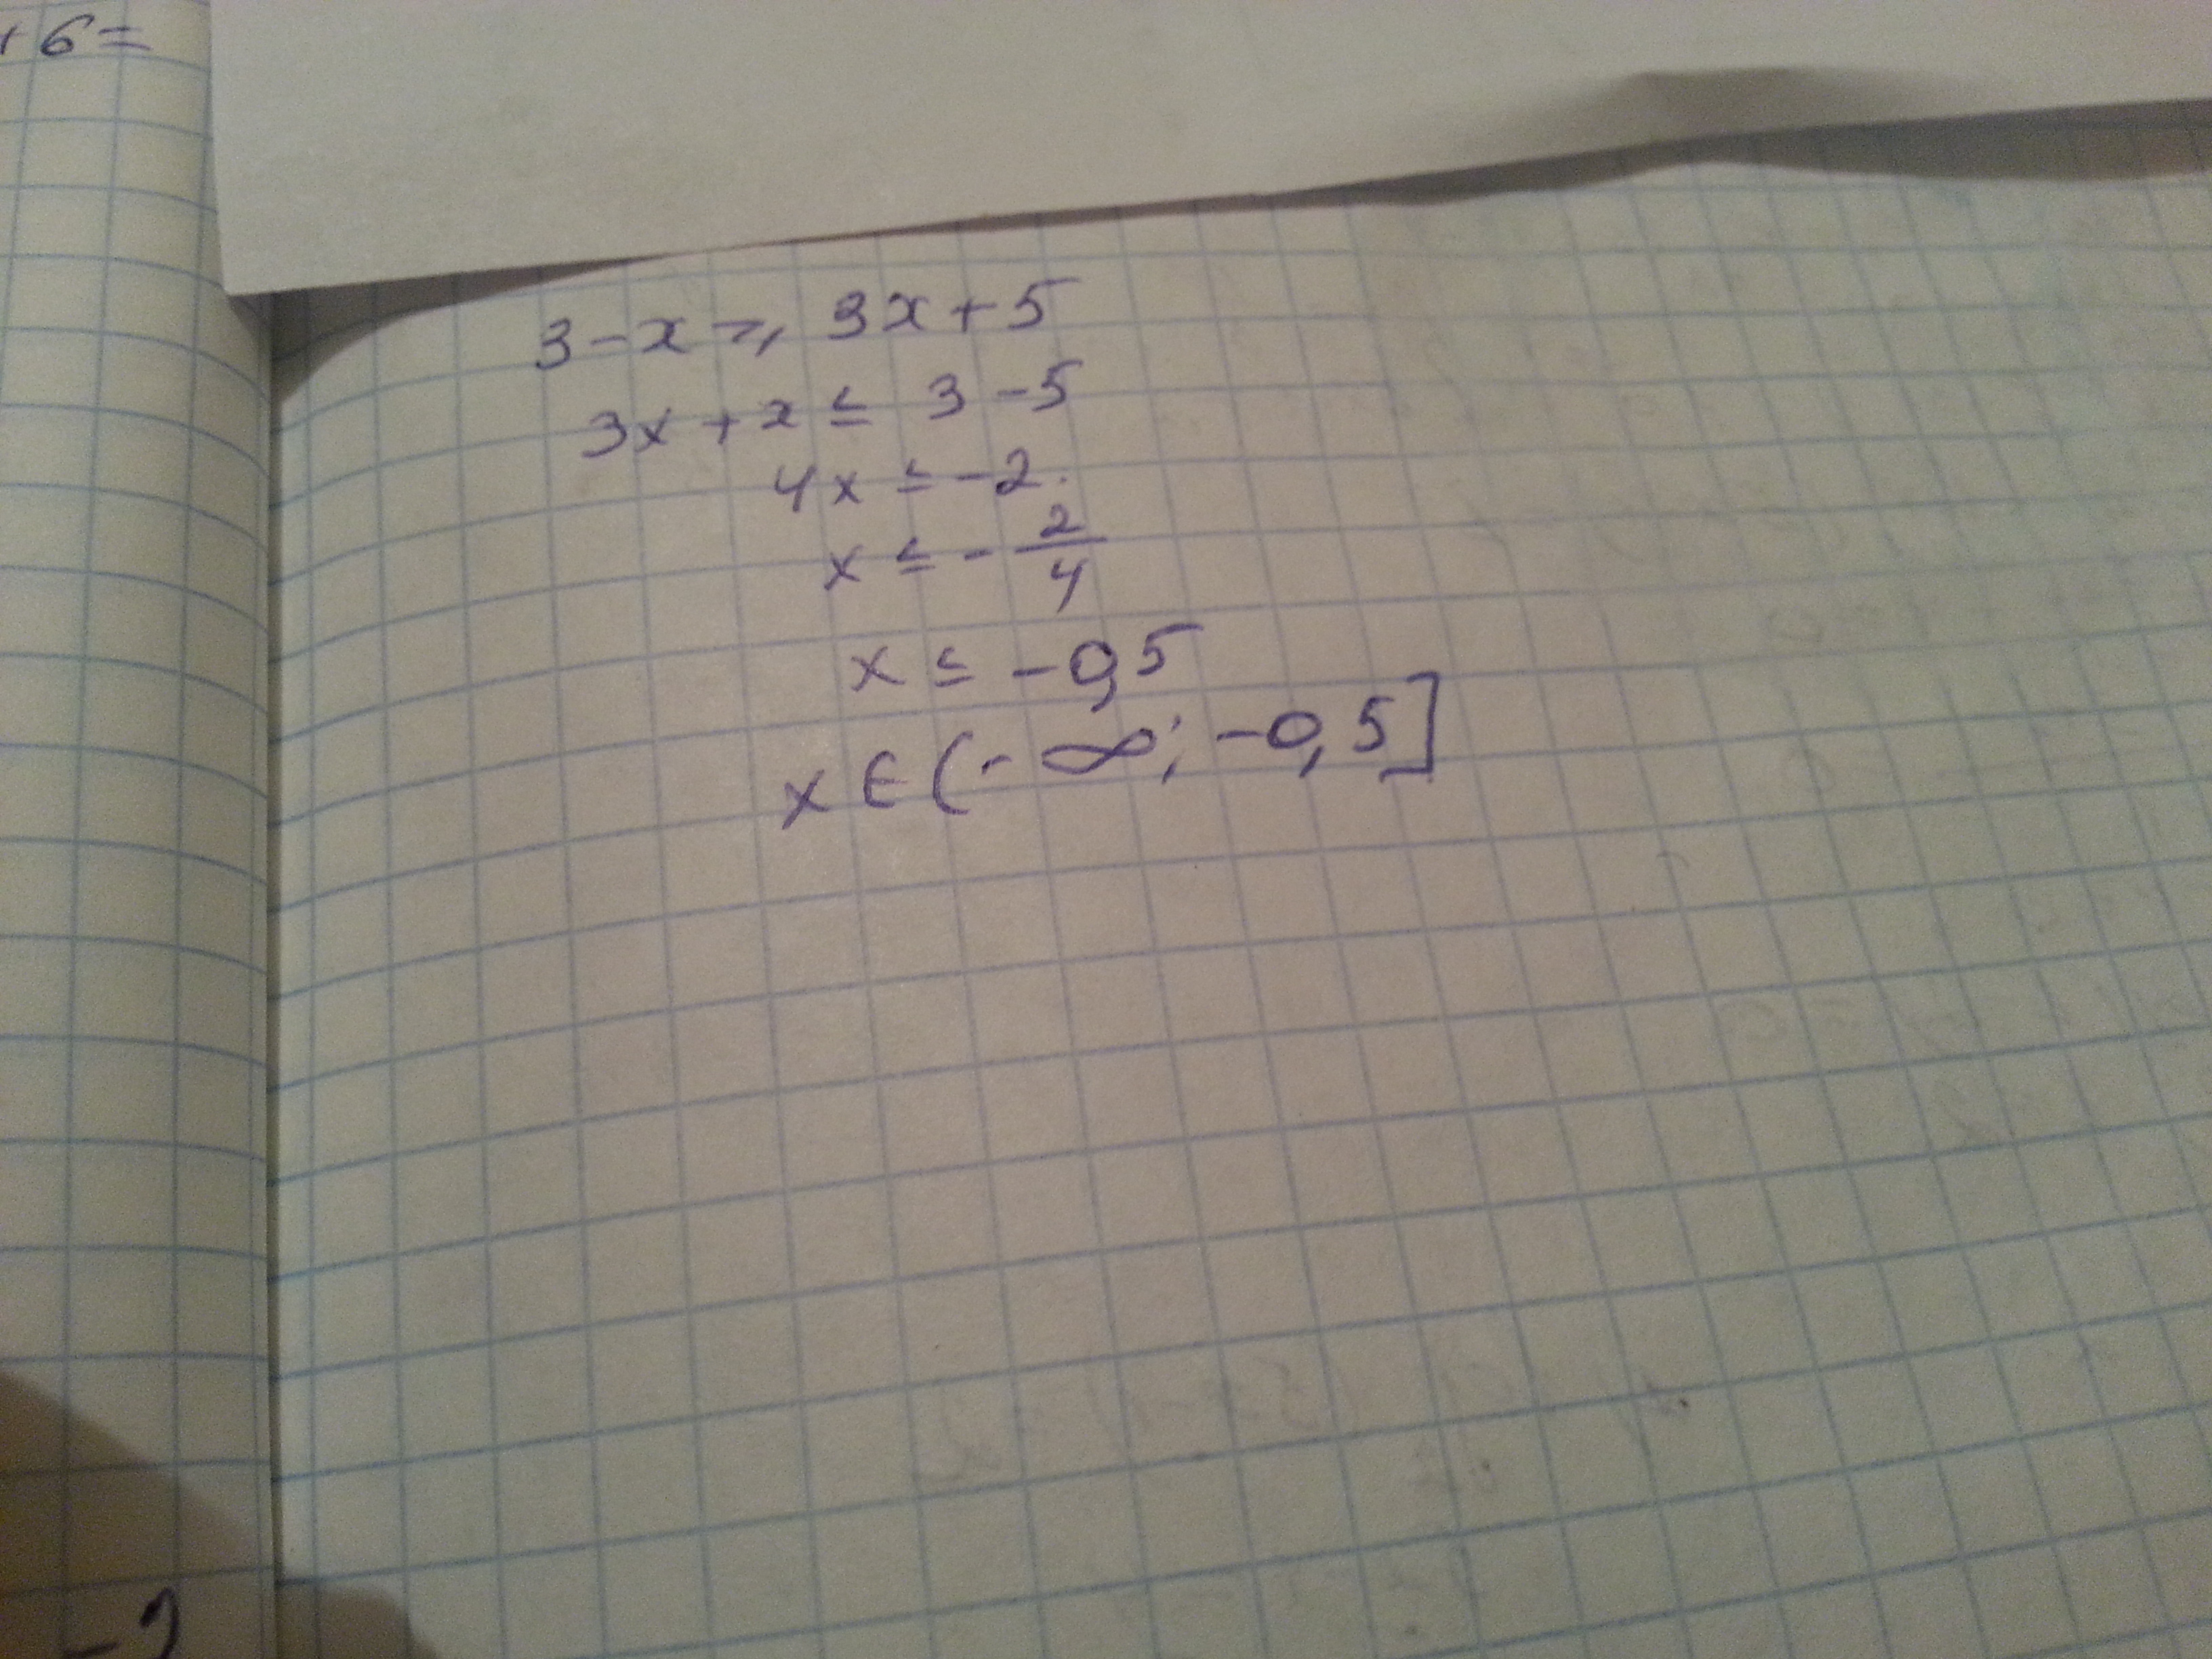 Укажите решение неравенства 3х 2 х 5. 3x-(x-3)<=5x. Укажите решение неравенства -3-5x< x+3. 3-X 3x+5 решение неравенства. 3-X>3x+5 укажите решение.